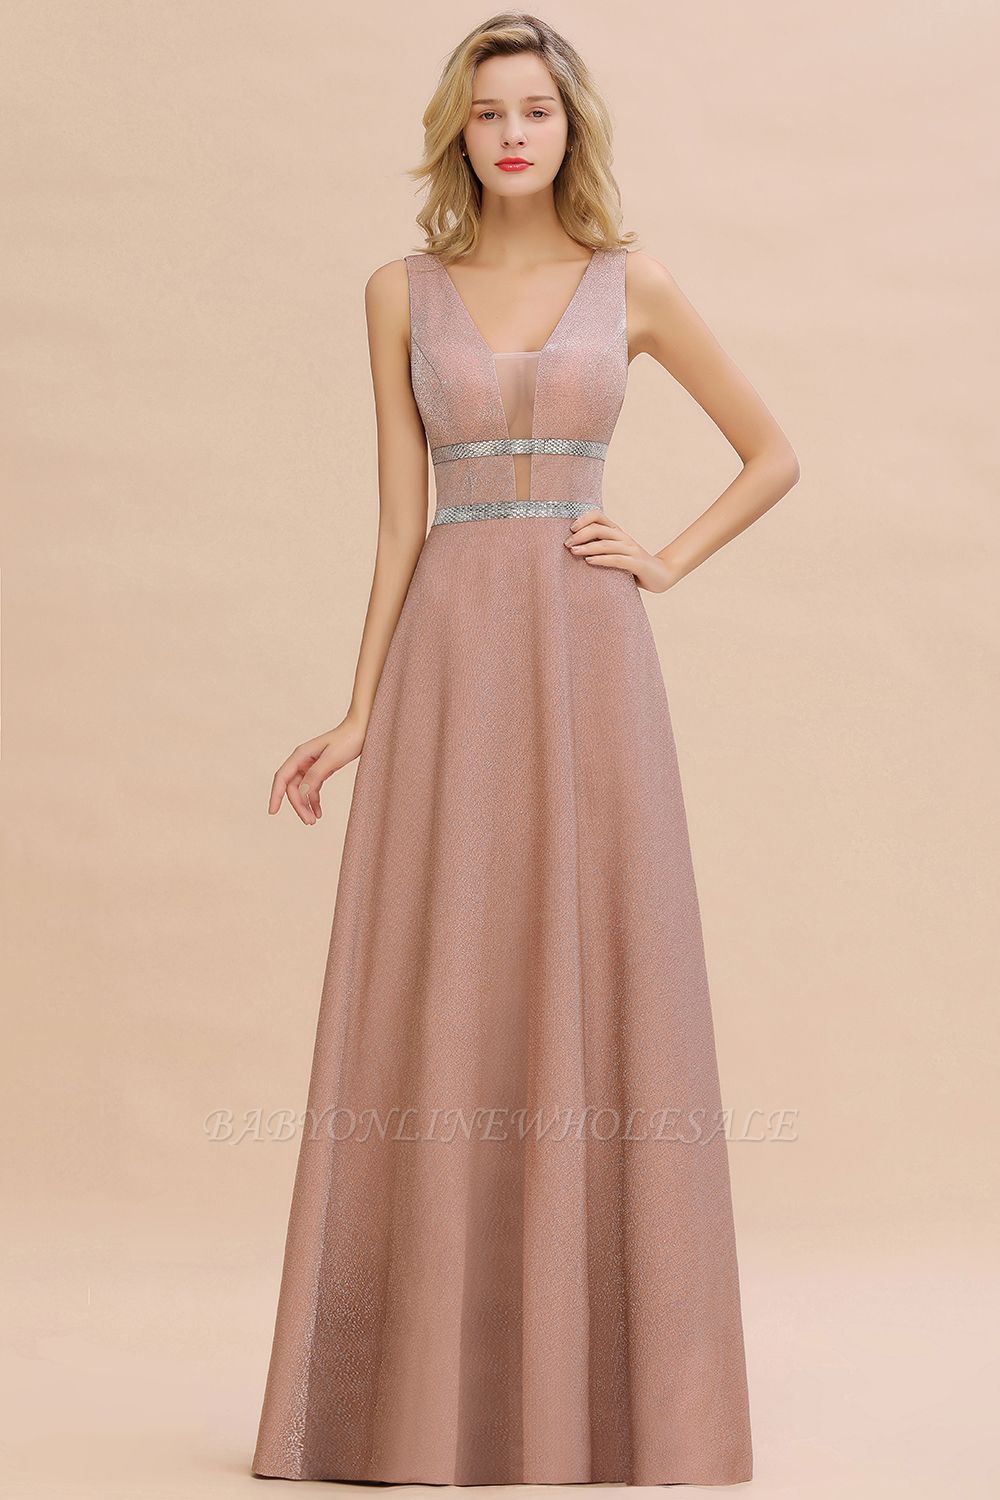 Sparkly Deep V-neck Long Evening Dresses with Shining Belt | Elegant Sleeveless V-back Pink Formal Dress